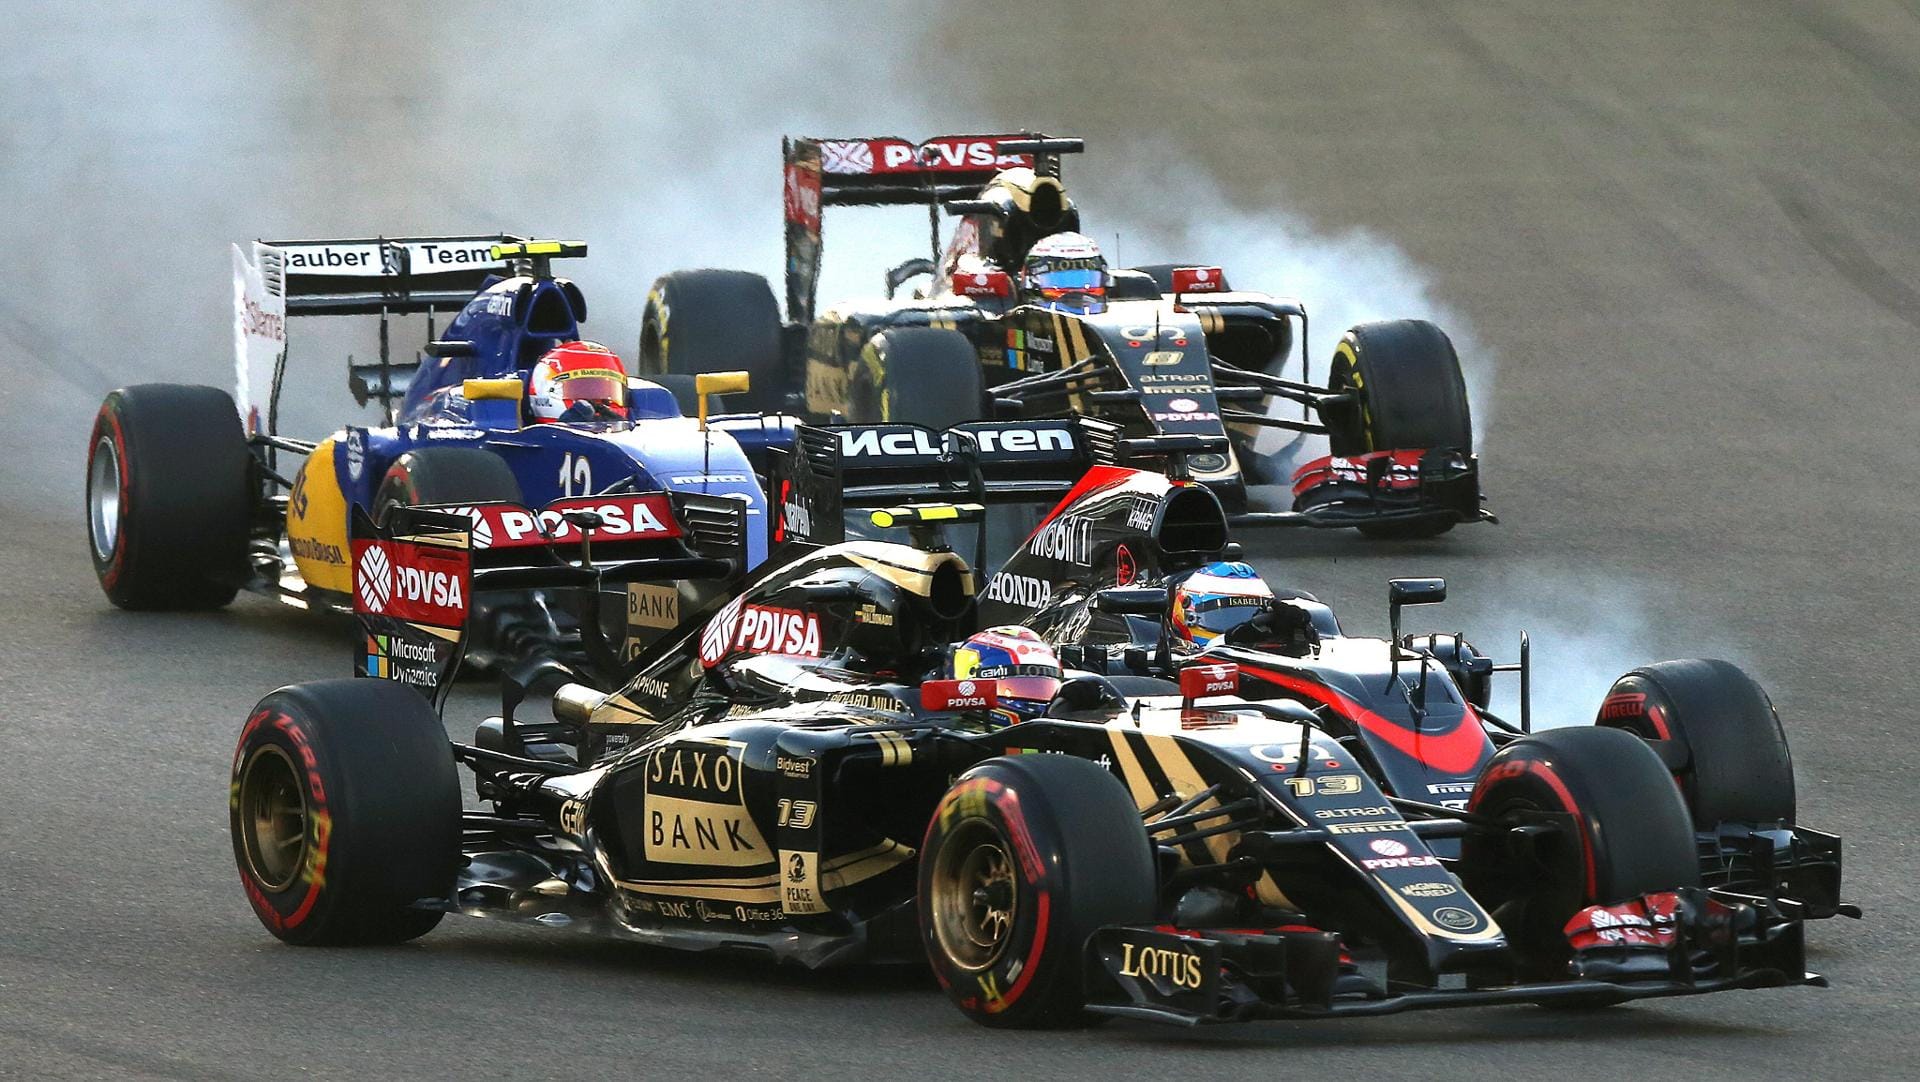 Gleich nach dem Start kracht es zwischen Fernando Alonso und Pastor Maldonado. Alonso bekommt eine Durchfahrtsstrafe aufgebrummt.